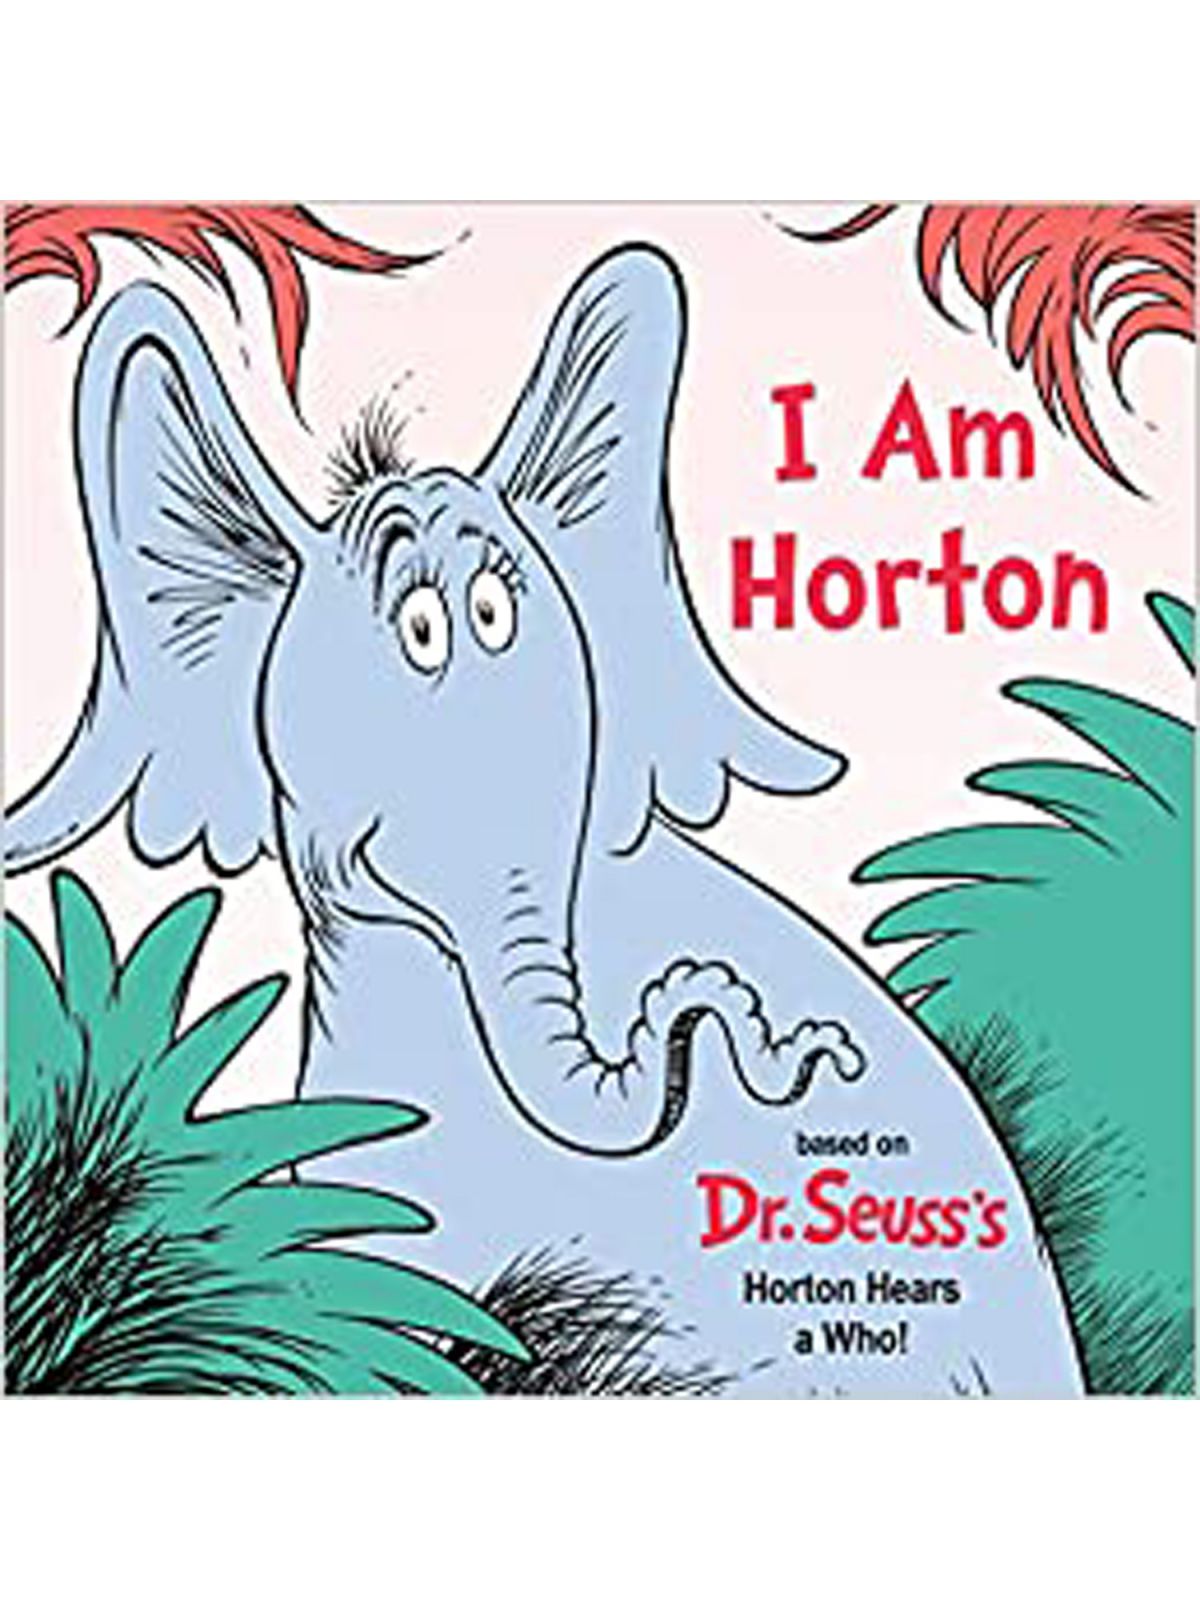 I AM HORTON DR SEUSS Купить Книгу на Английском